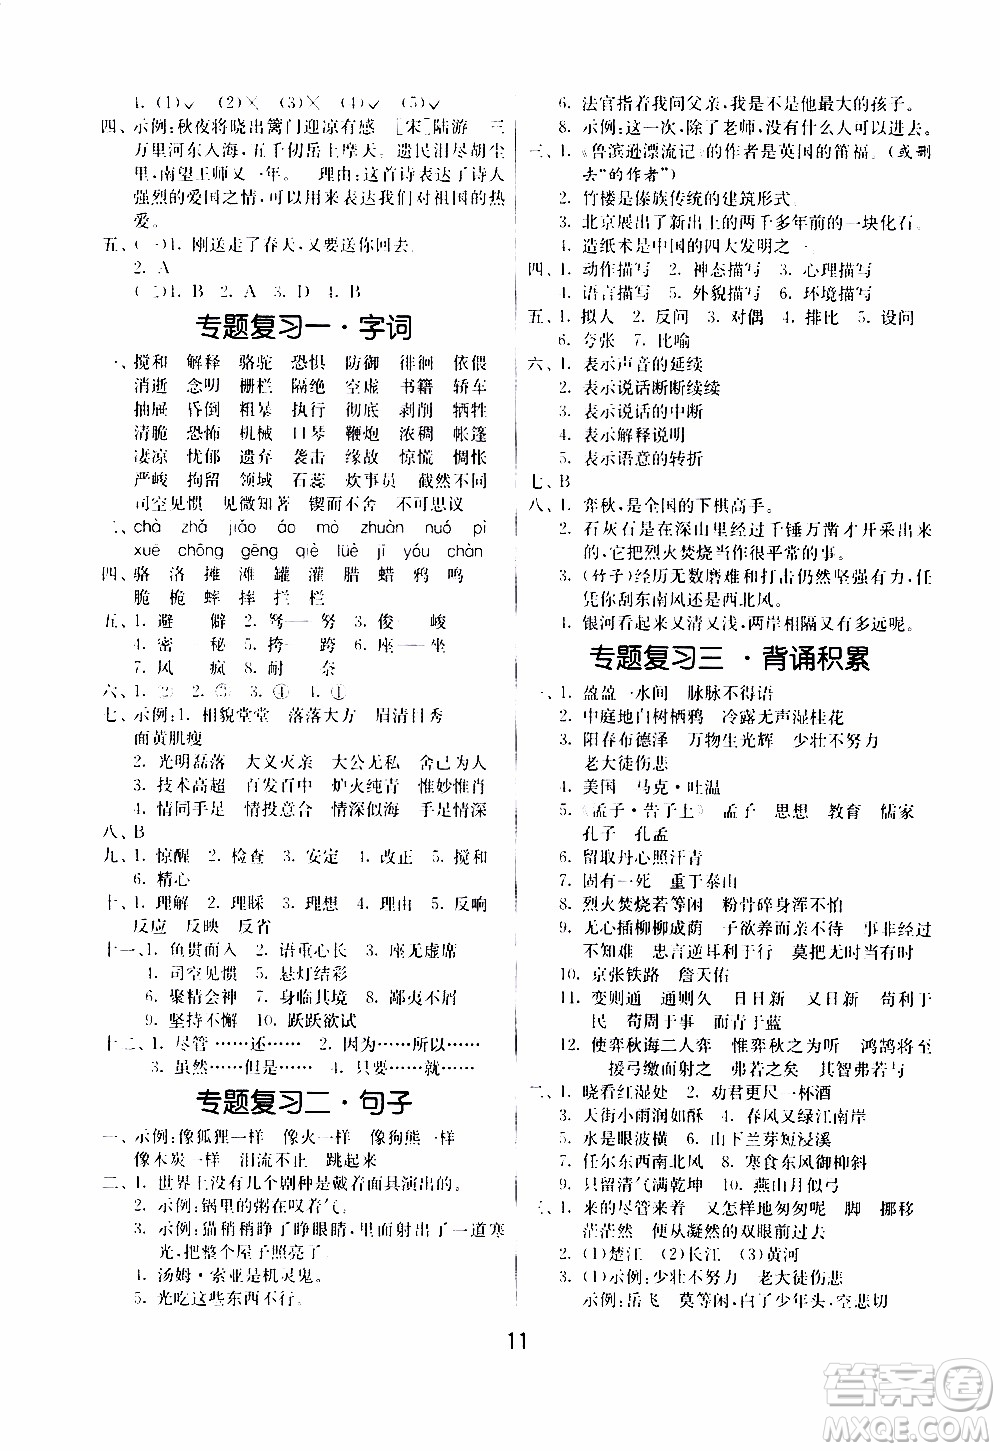 江苏人民出版社2020年课时训练语文六年级下册RMJY人民教育版参考答案